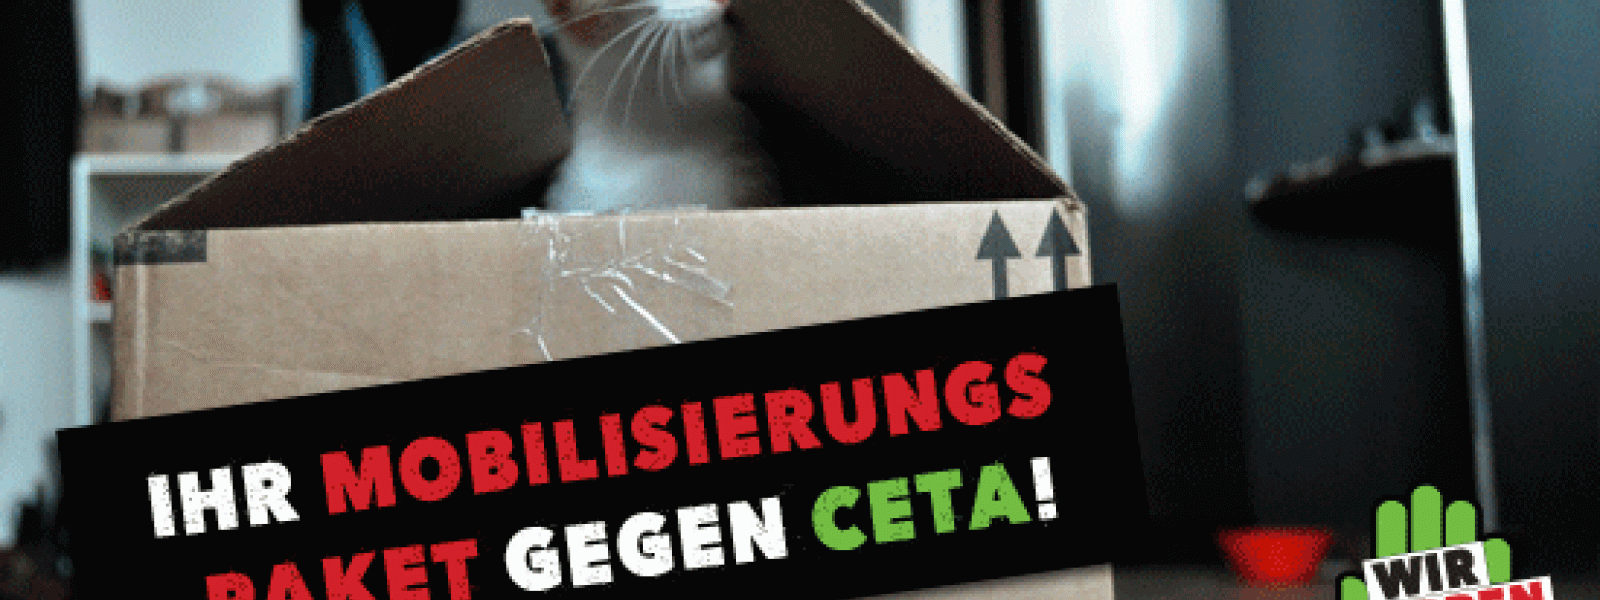 Mobilisierungspaket gegen CETA